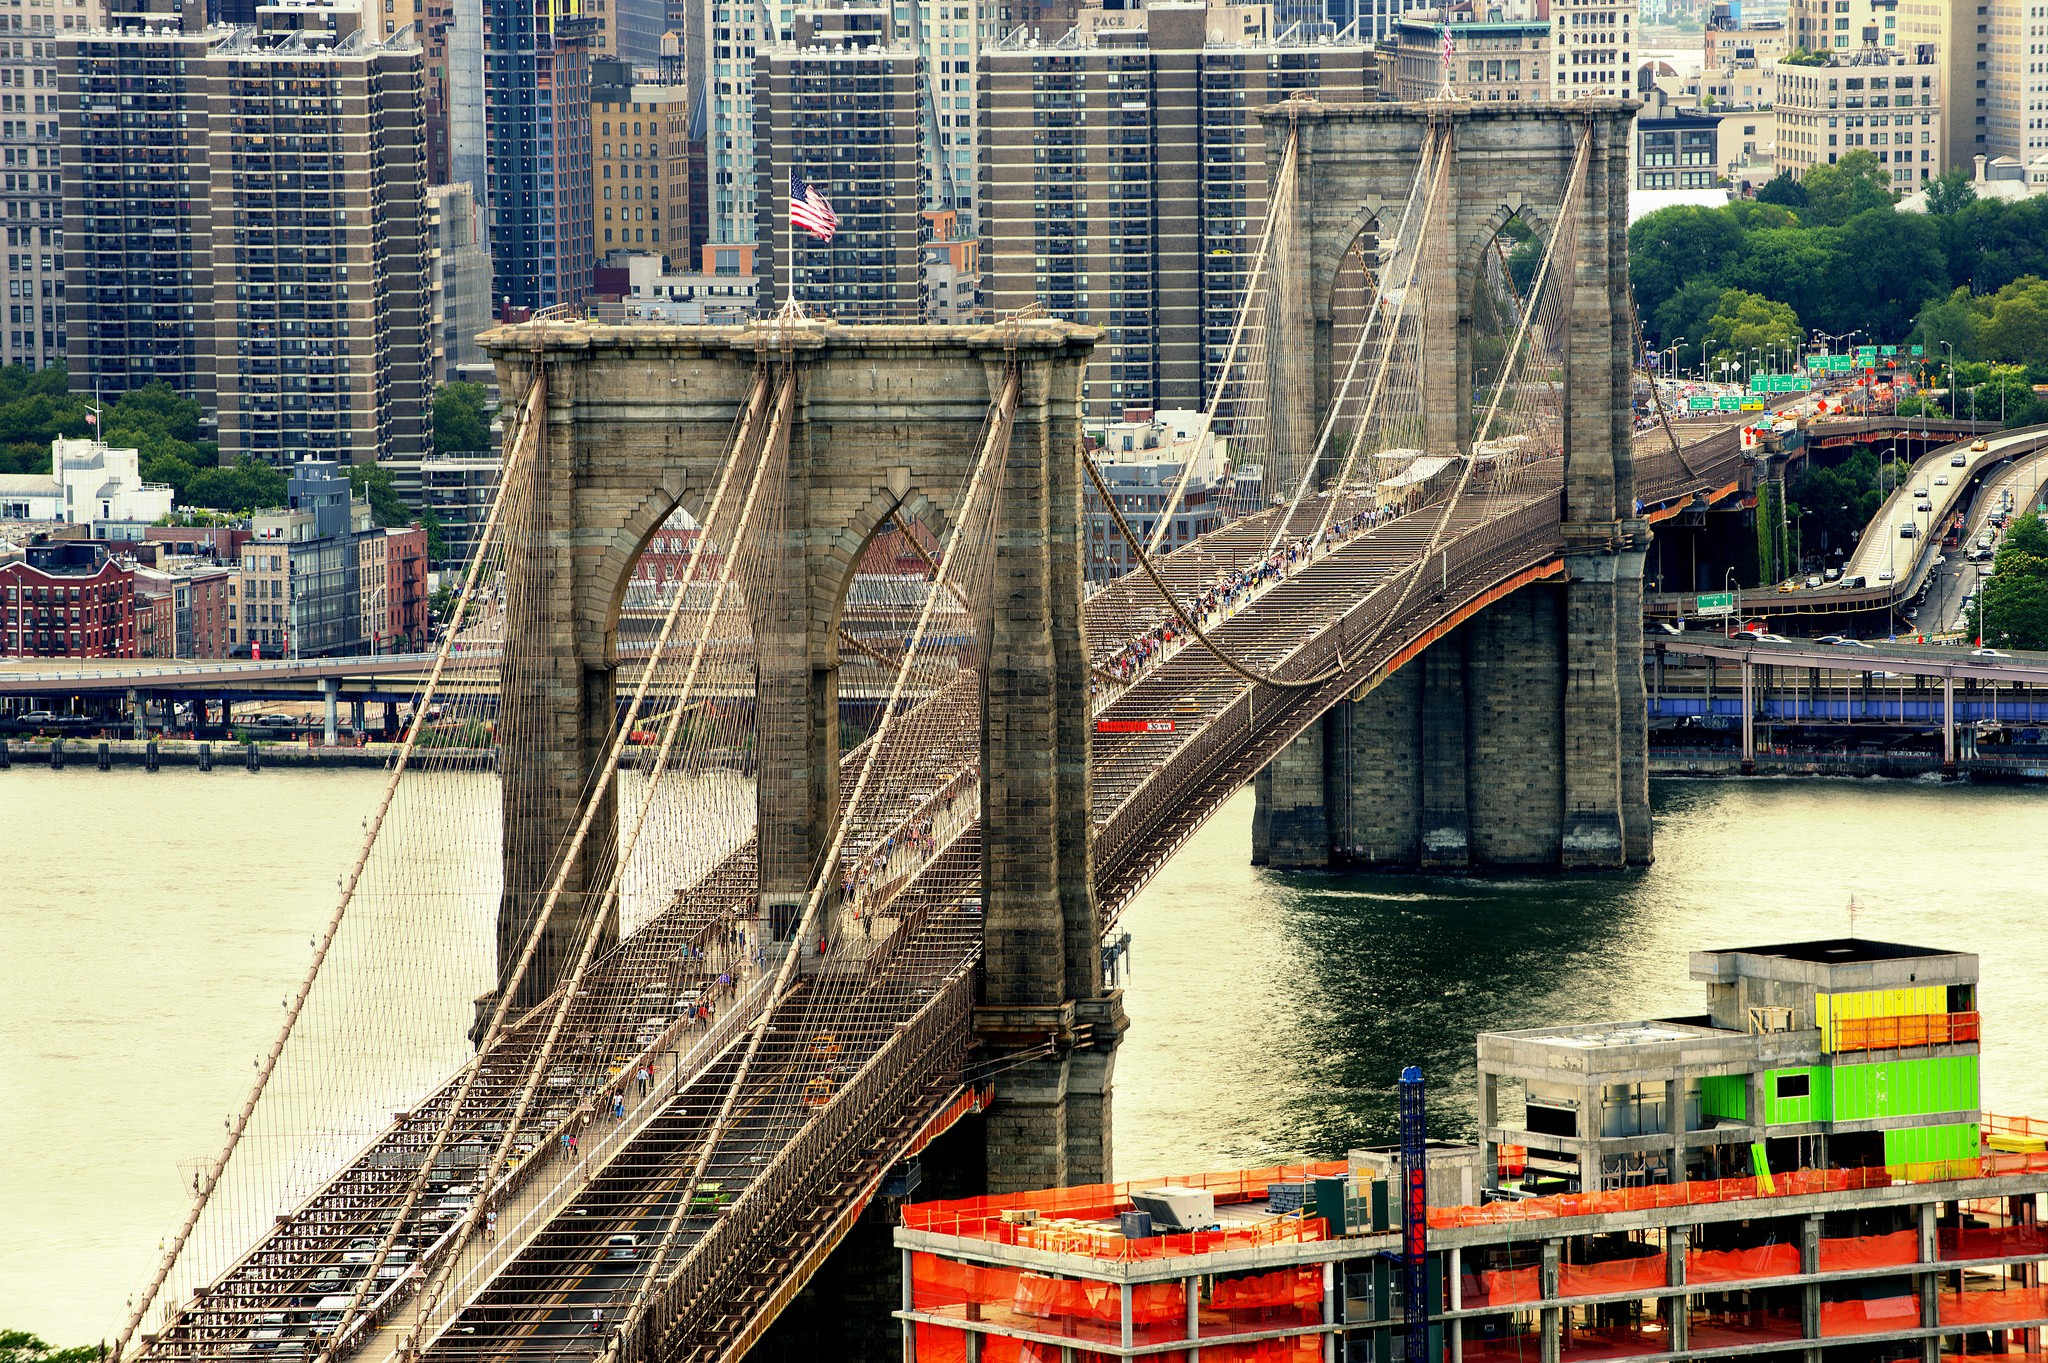 General 2048x1363 USA bridge Brooklyn Bridge New York City cityscape architecture